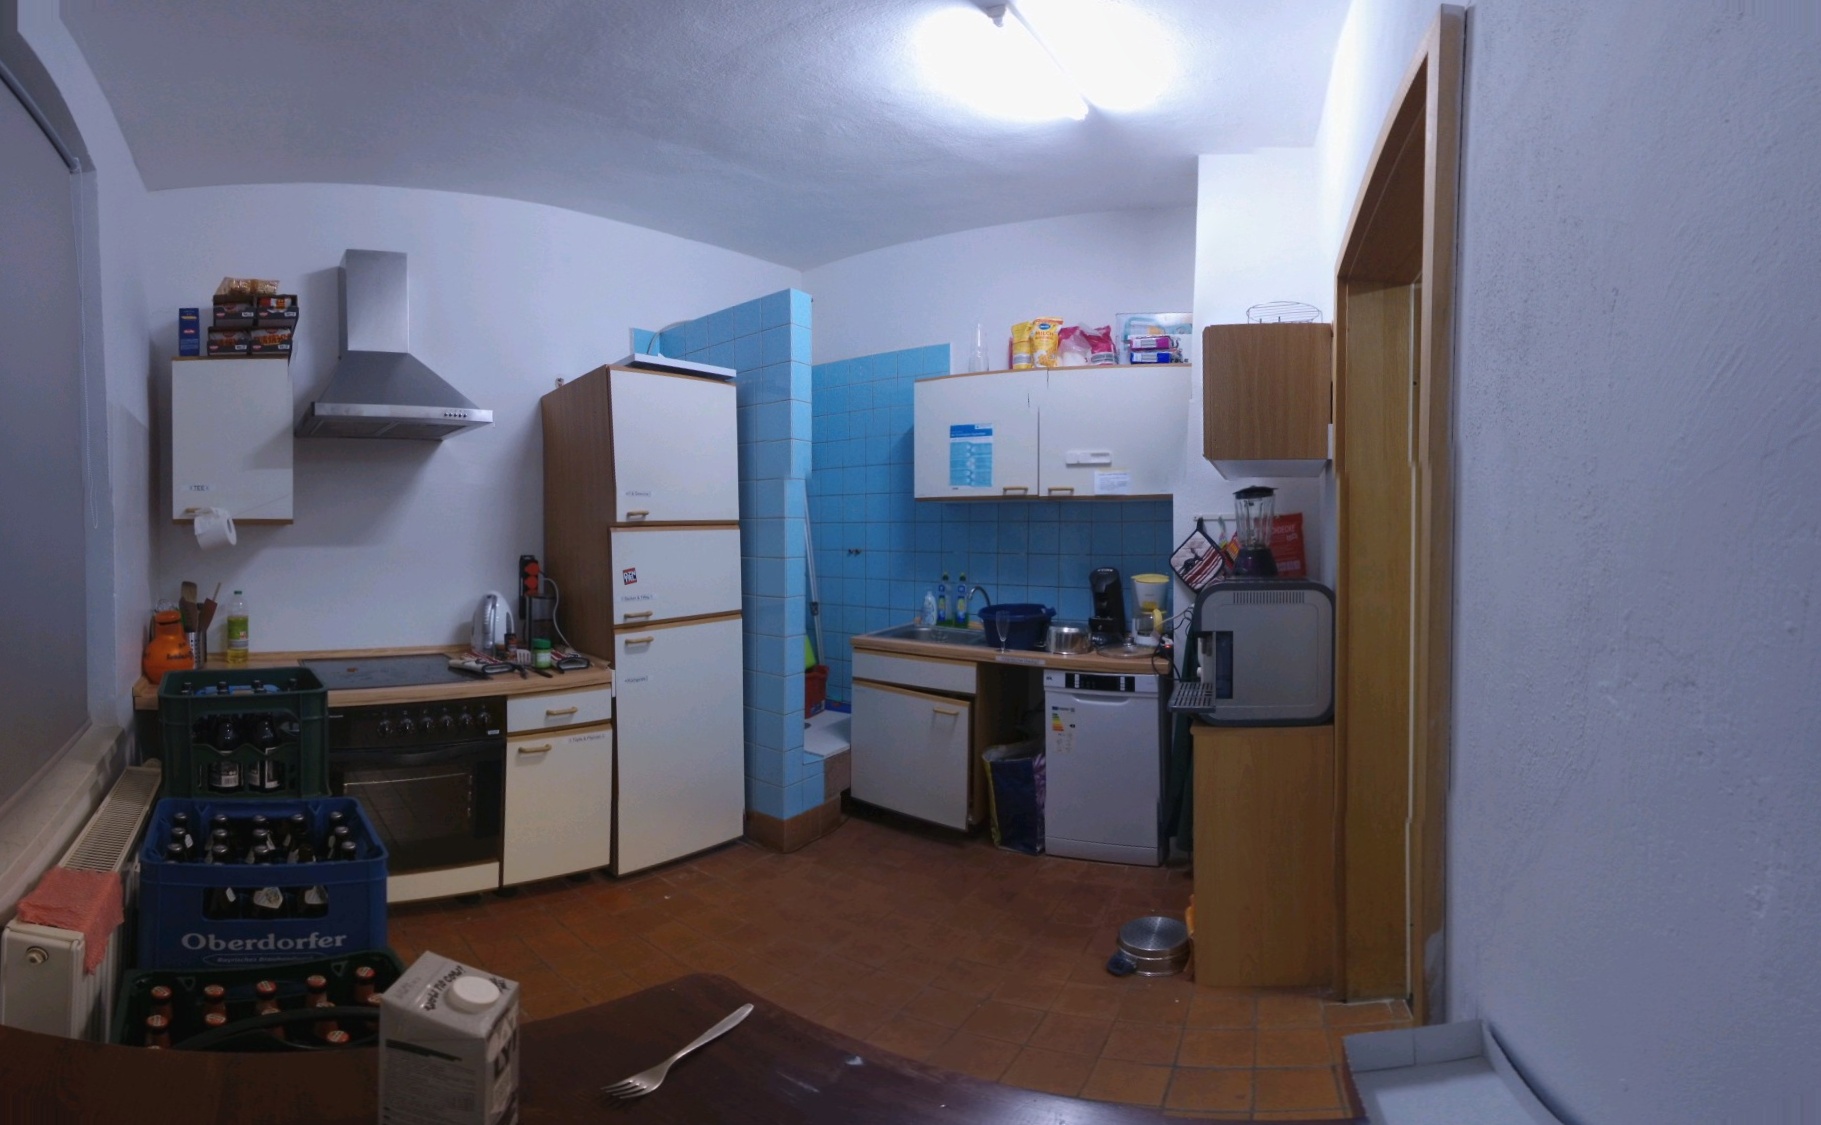 Eine unaufgeräumte Küche, welche einen blau gefließten Bereich enthält, welcher wie eine Dusche aussieht. Mitten in der Küche! Alles zum Kochen ist vorhanden, ein Nudelabgießtopf liegt auf dem Boden, eine Gabel und Milchpackung vor der Kamera und eine Toilettenpapierrolle wurde als Aufwischtücherersatz installiert